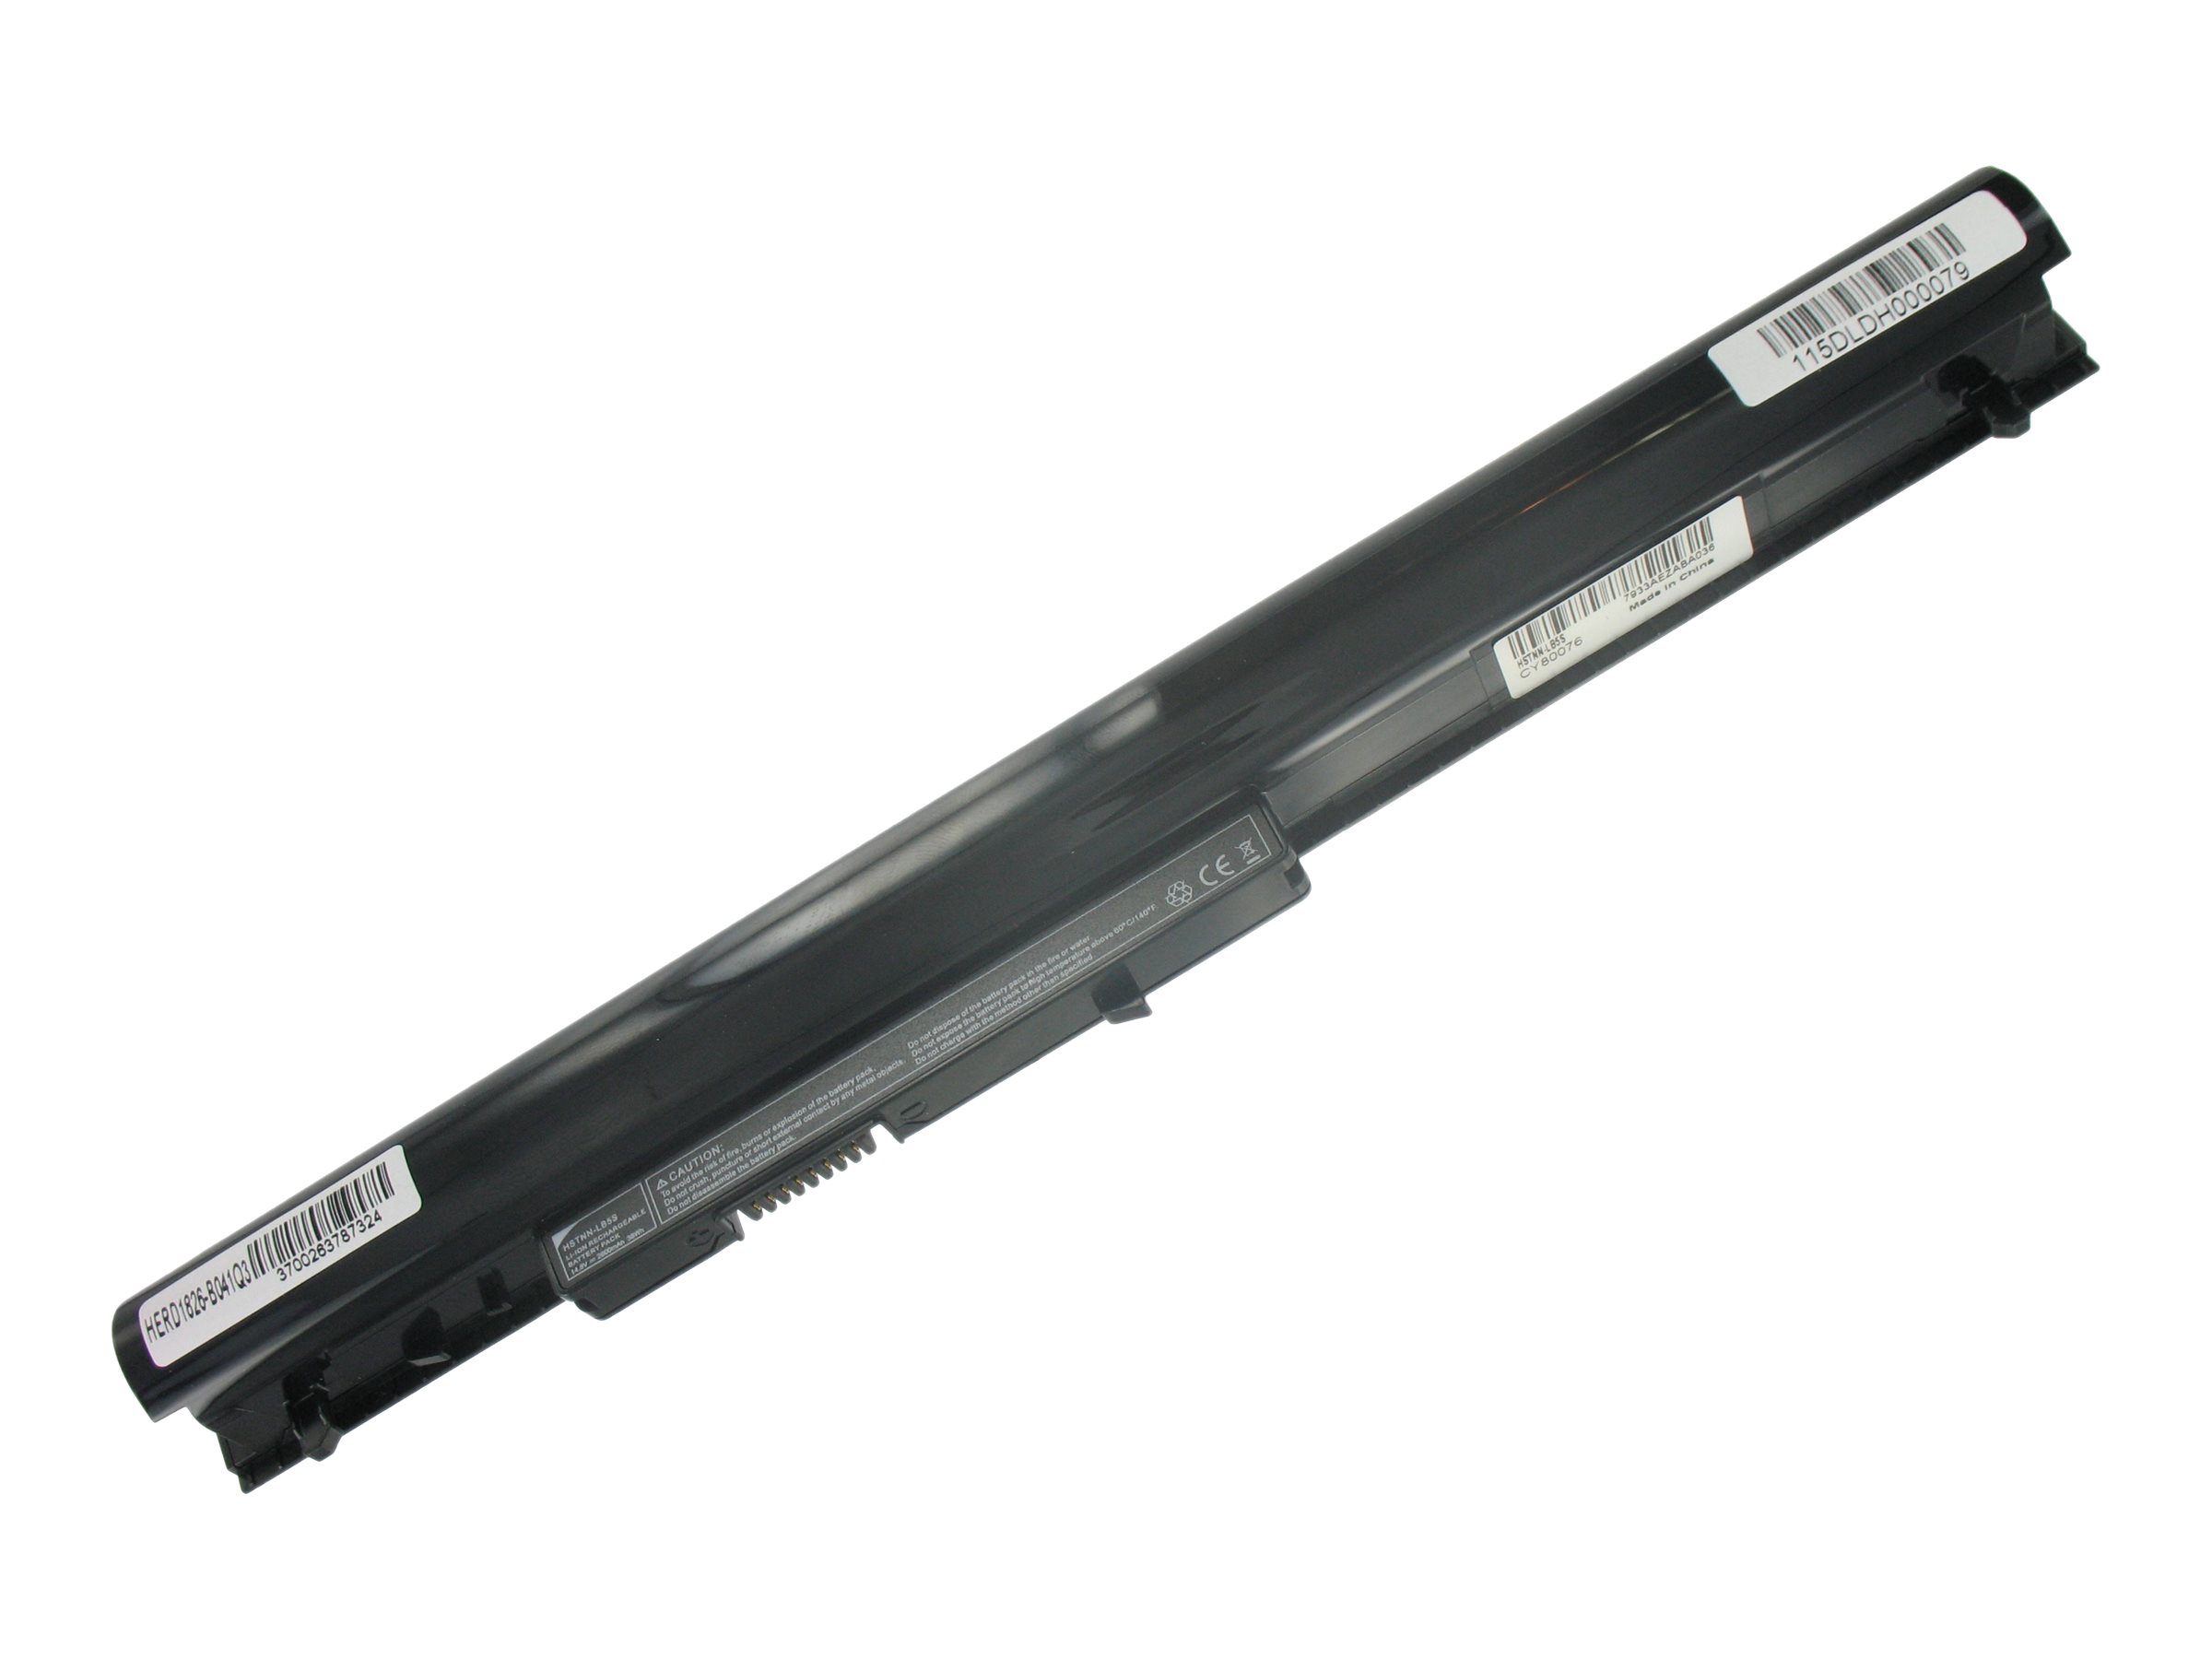 DLH - Batterie de portable (standard) (équivalent à : HP OA04, HP HSTNN-PB5S, HP F3B94AA, HP HSTNN-LB5S, HP OA03, HP HSTNN-LB5Y, HP HSTNN-PB5Y) - Lithium Ion - 4 cellules - 2600 mAh - 38 Wh - noir - pour HP Laptop 14, 15; Pavilion 15 - HERD1826-B041Q3 - Batteries spécifiques